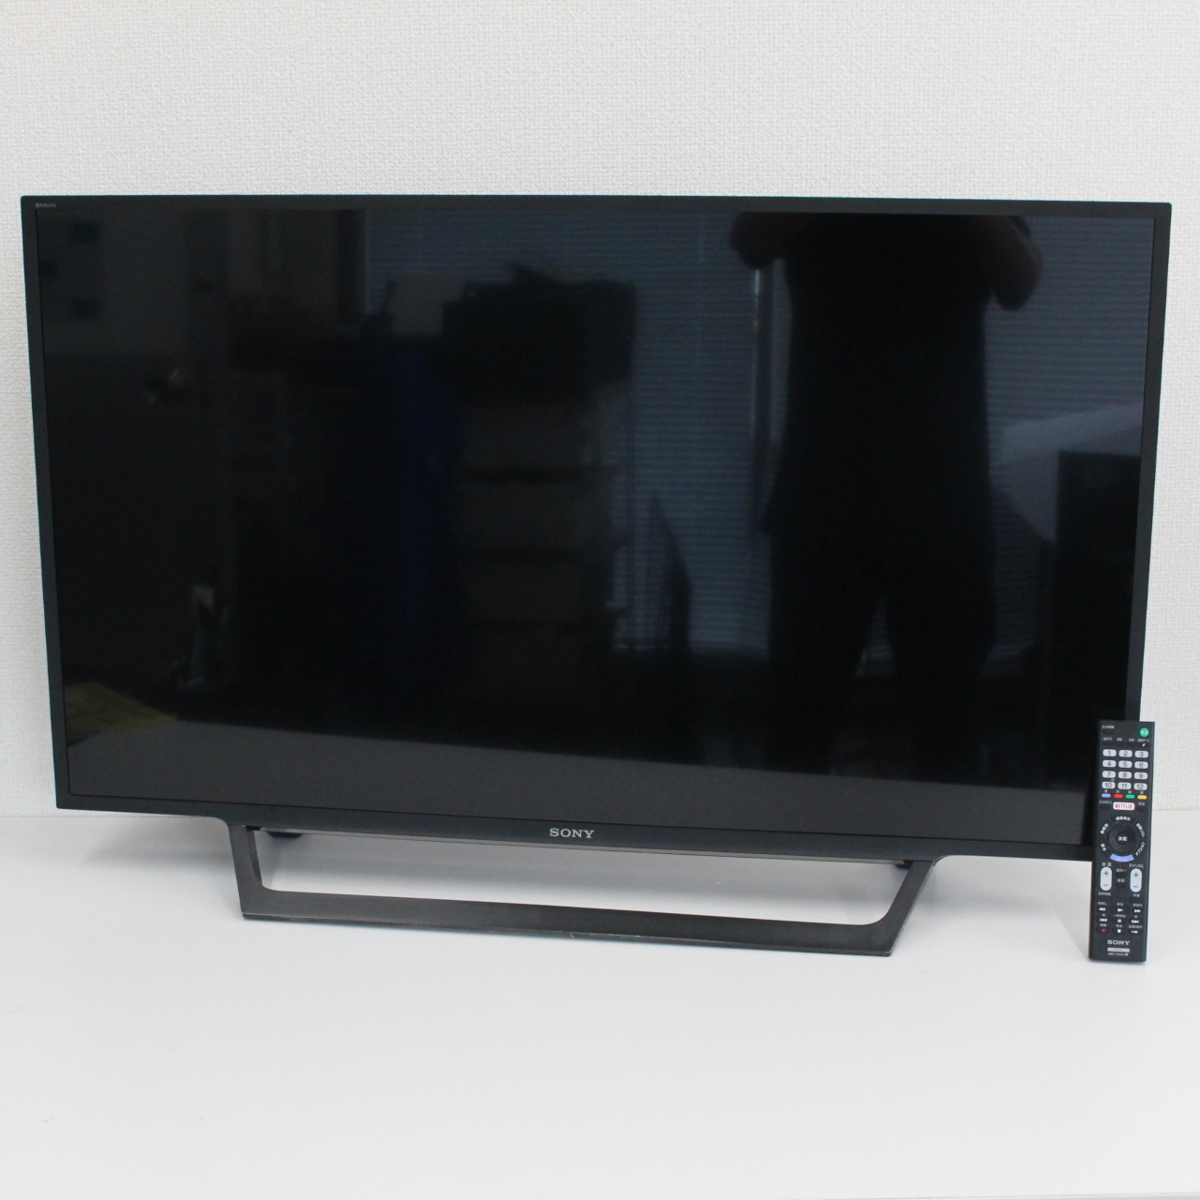 川崎市宮前区にて ソニー 液晶テレビ KJ-43W730E 2020年製 を出張買取させて頂きました。